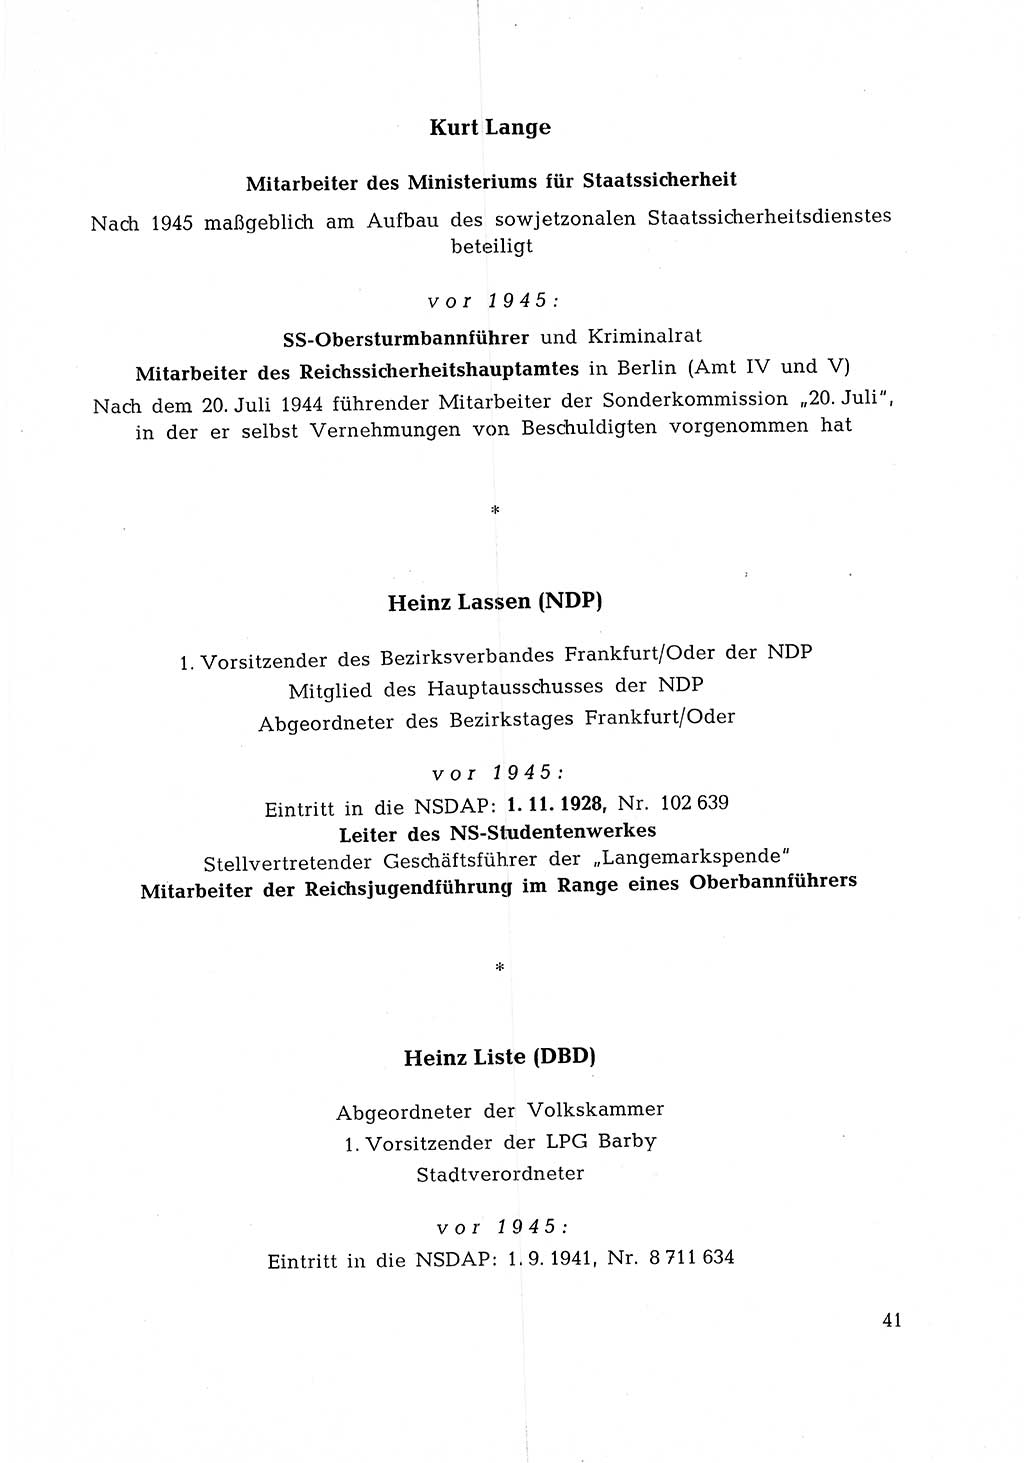 Ehemalige Nationalsozialisten in Pankows Diensten [Deutsche Demokratische Republik (DDR)] 1965, Seite 41 (Ehem. Nat.-Soz. DDR 1965, S. 41)